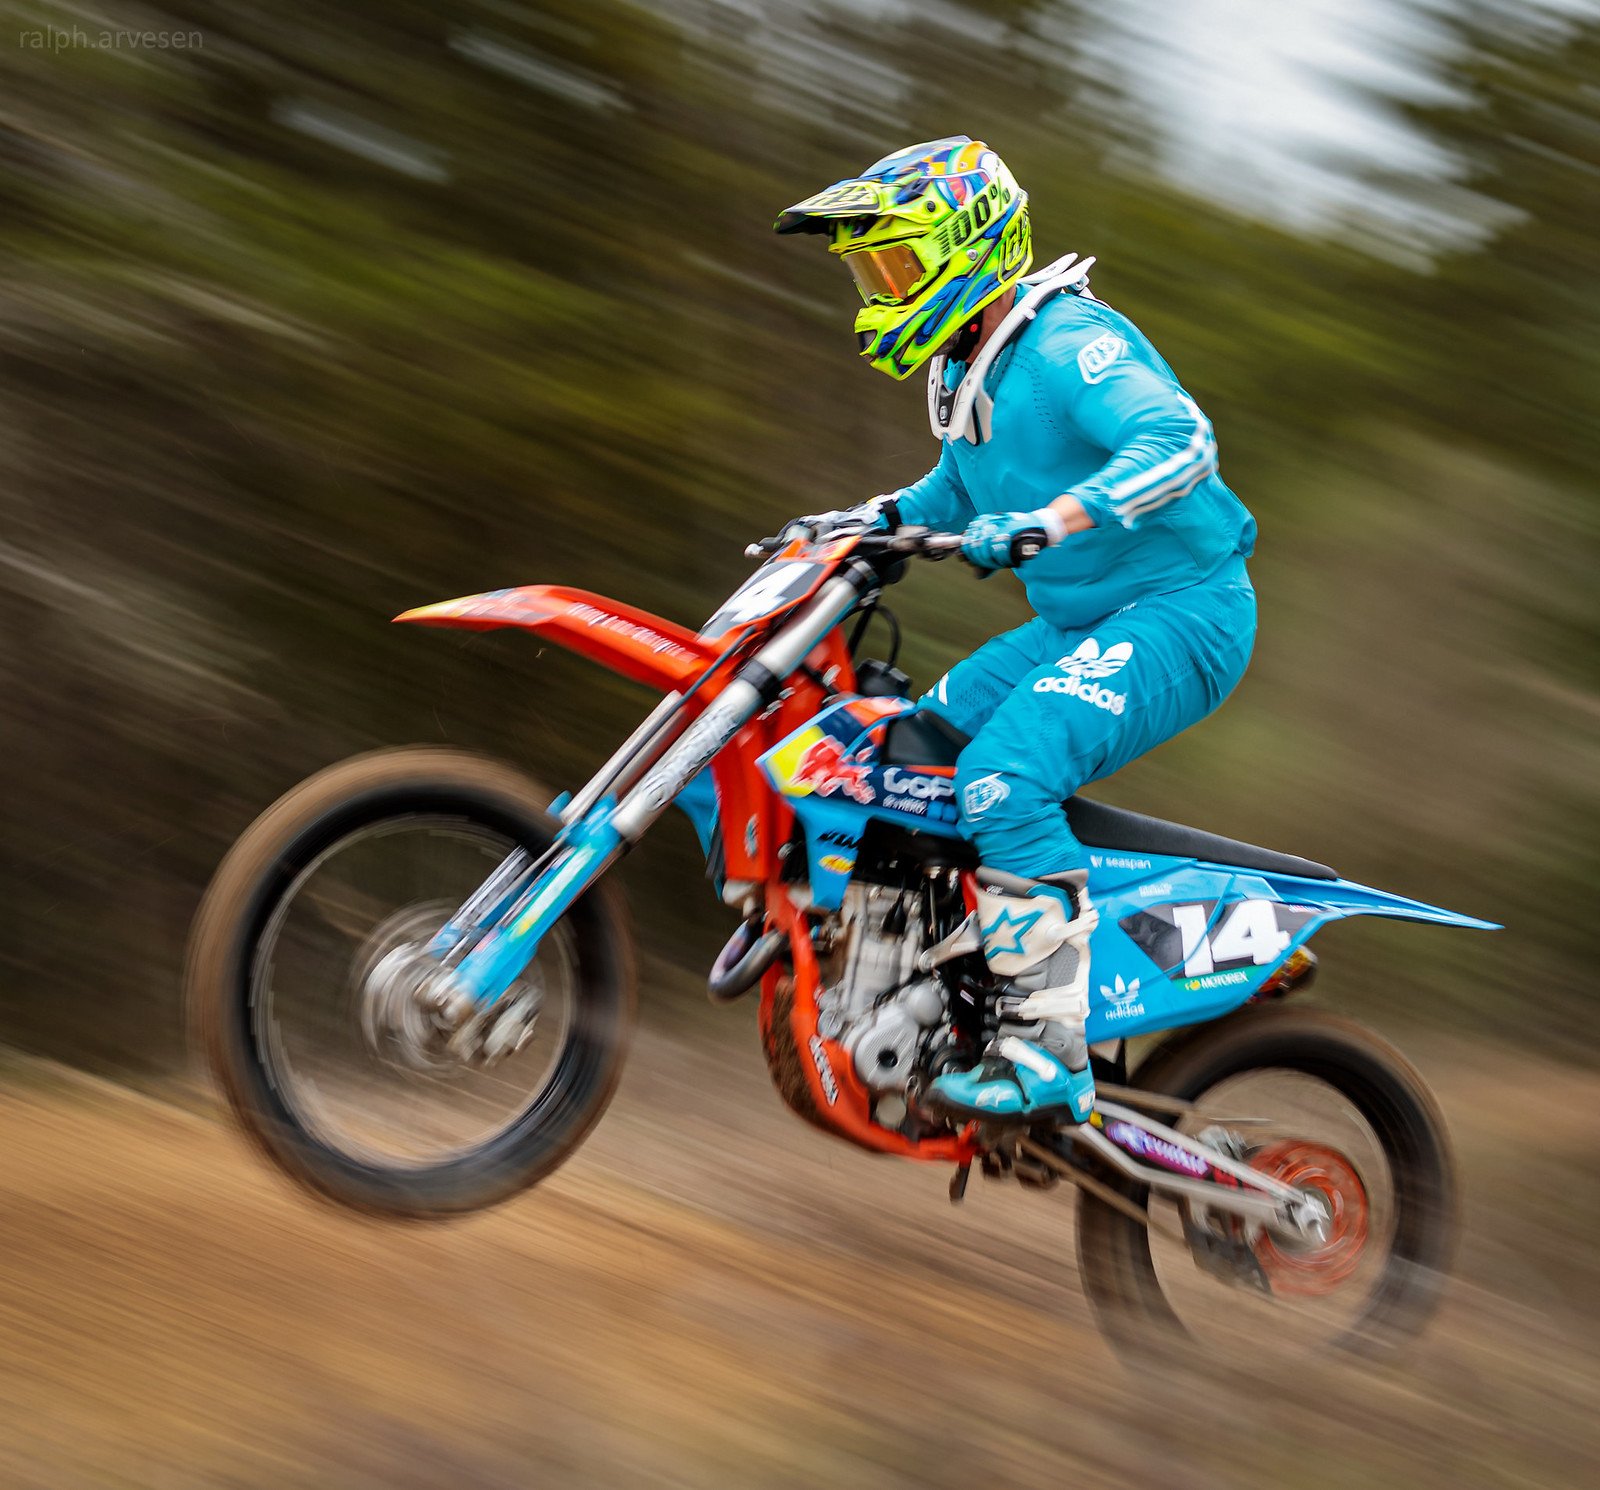 Motocross | Texas Review | Ralph Arvesen